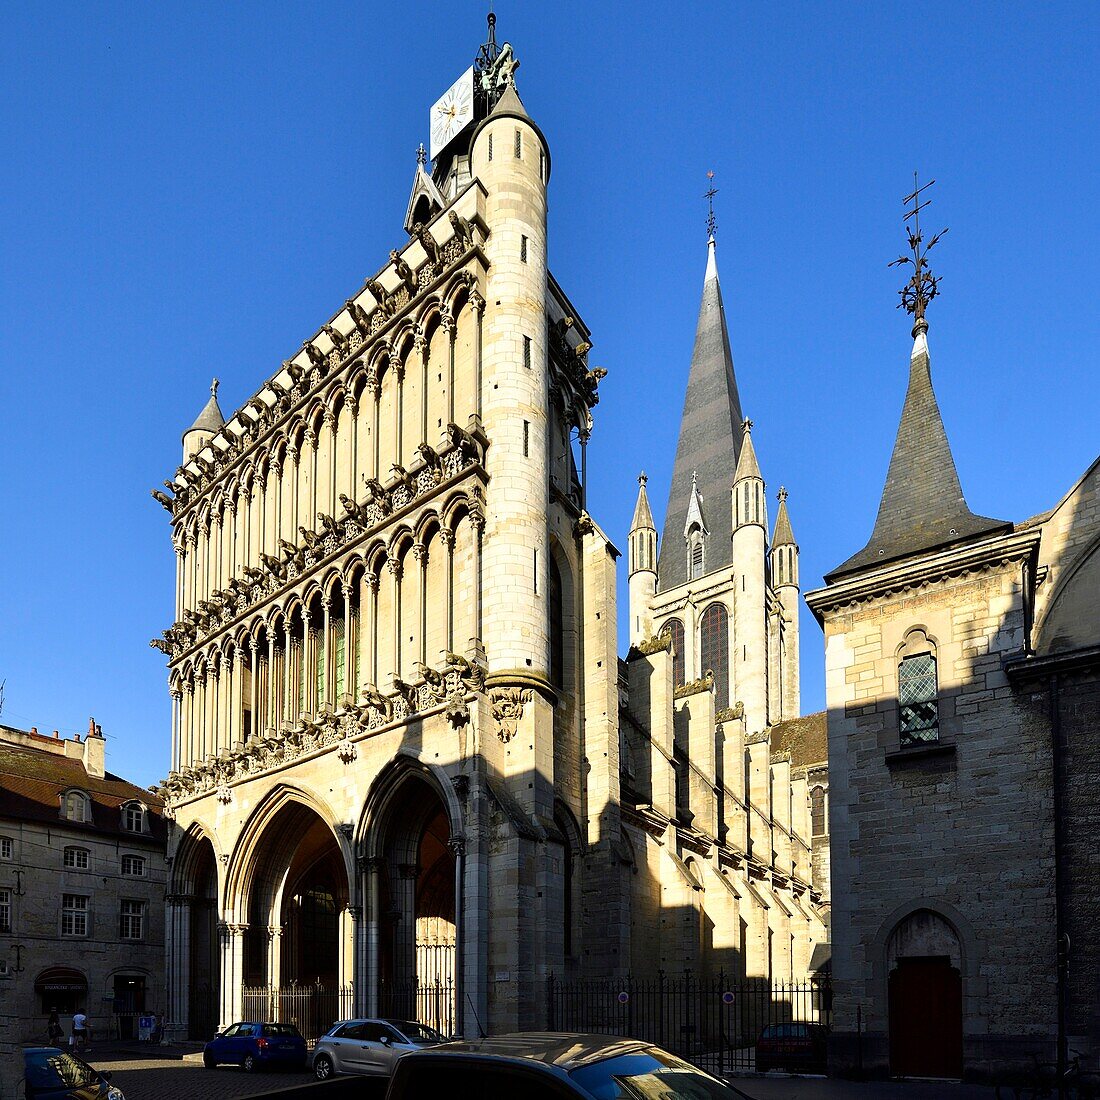 Frankreich, Cote d'Or, Dijon, von der UNESCO zum Weltkulturerbe erklärt, Kirche Notre Dame